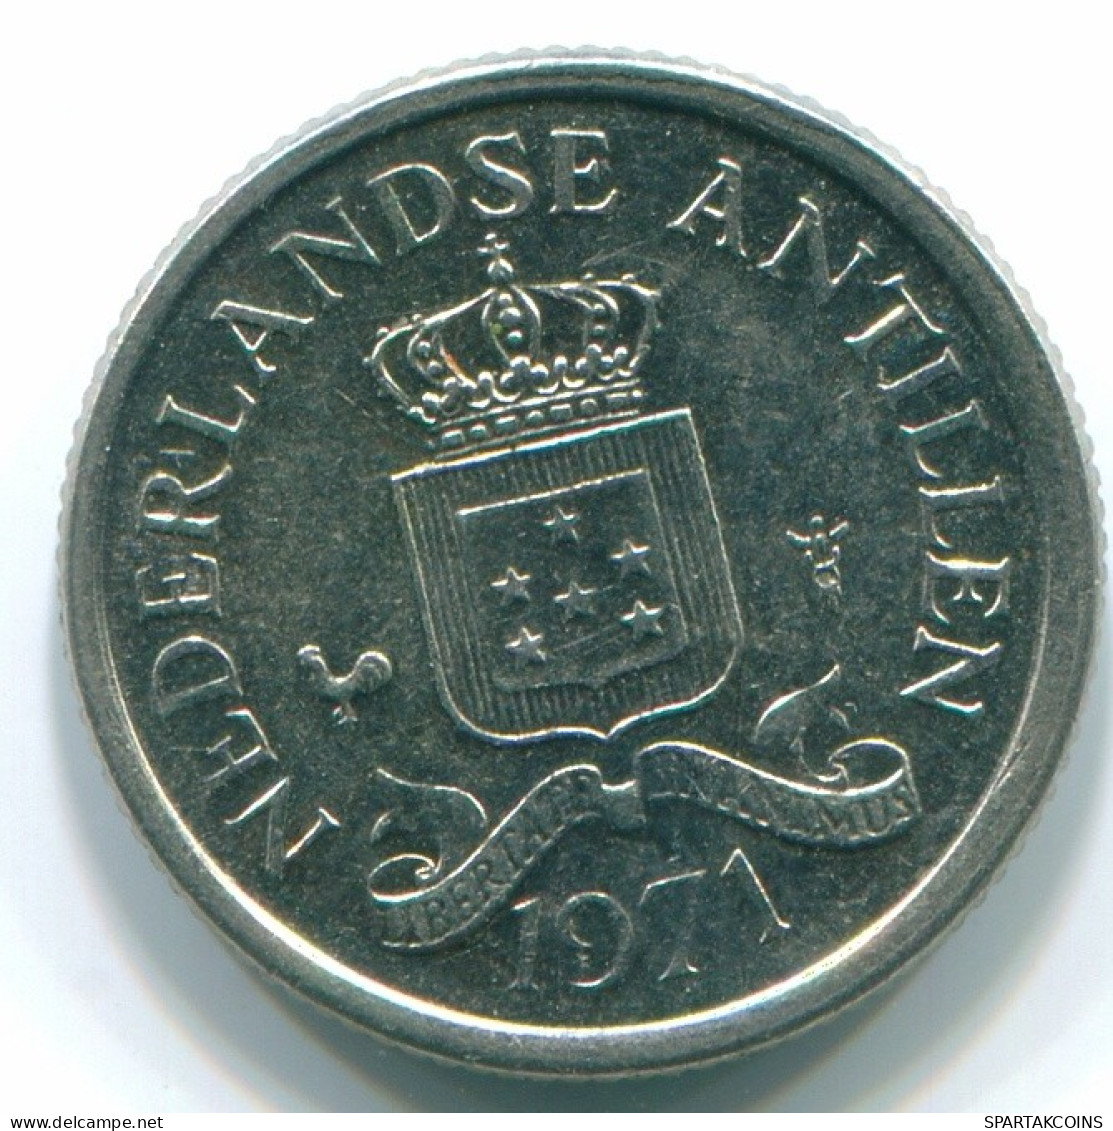 10 CENTS 1971 NETHERLANDS ANTILLES Nickel Colonial Coin #S13411.U.A - Niederländische Antillen